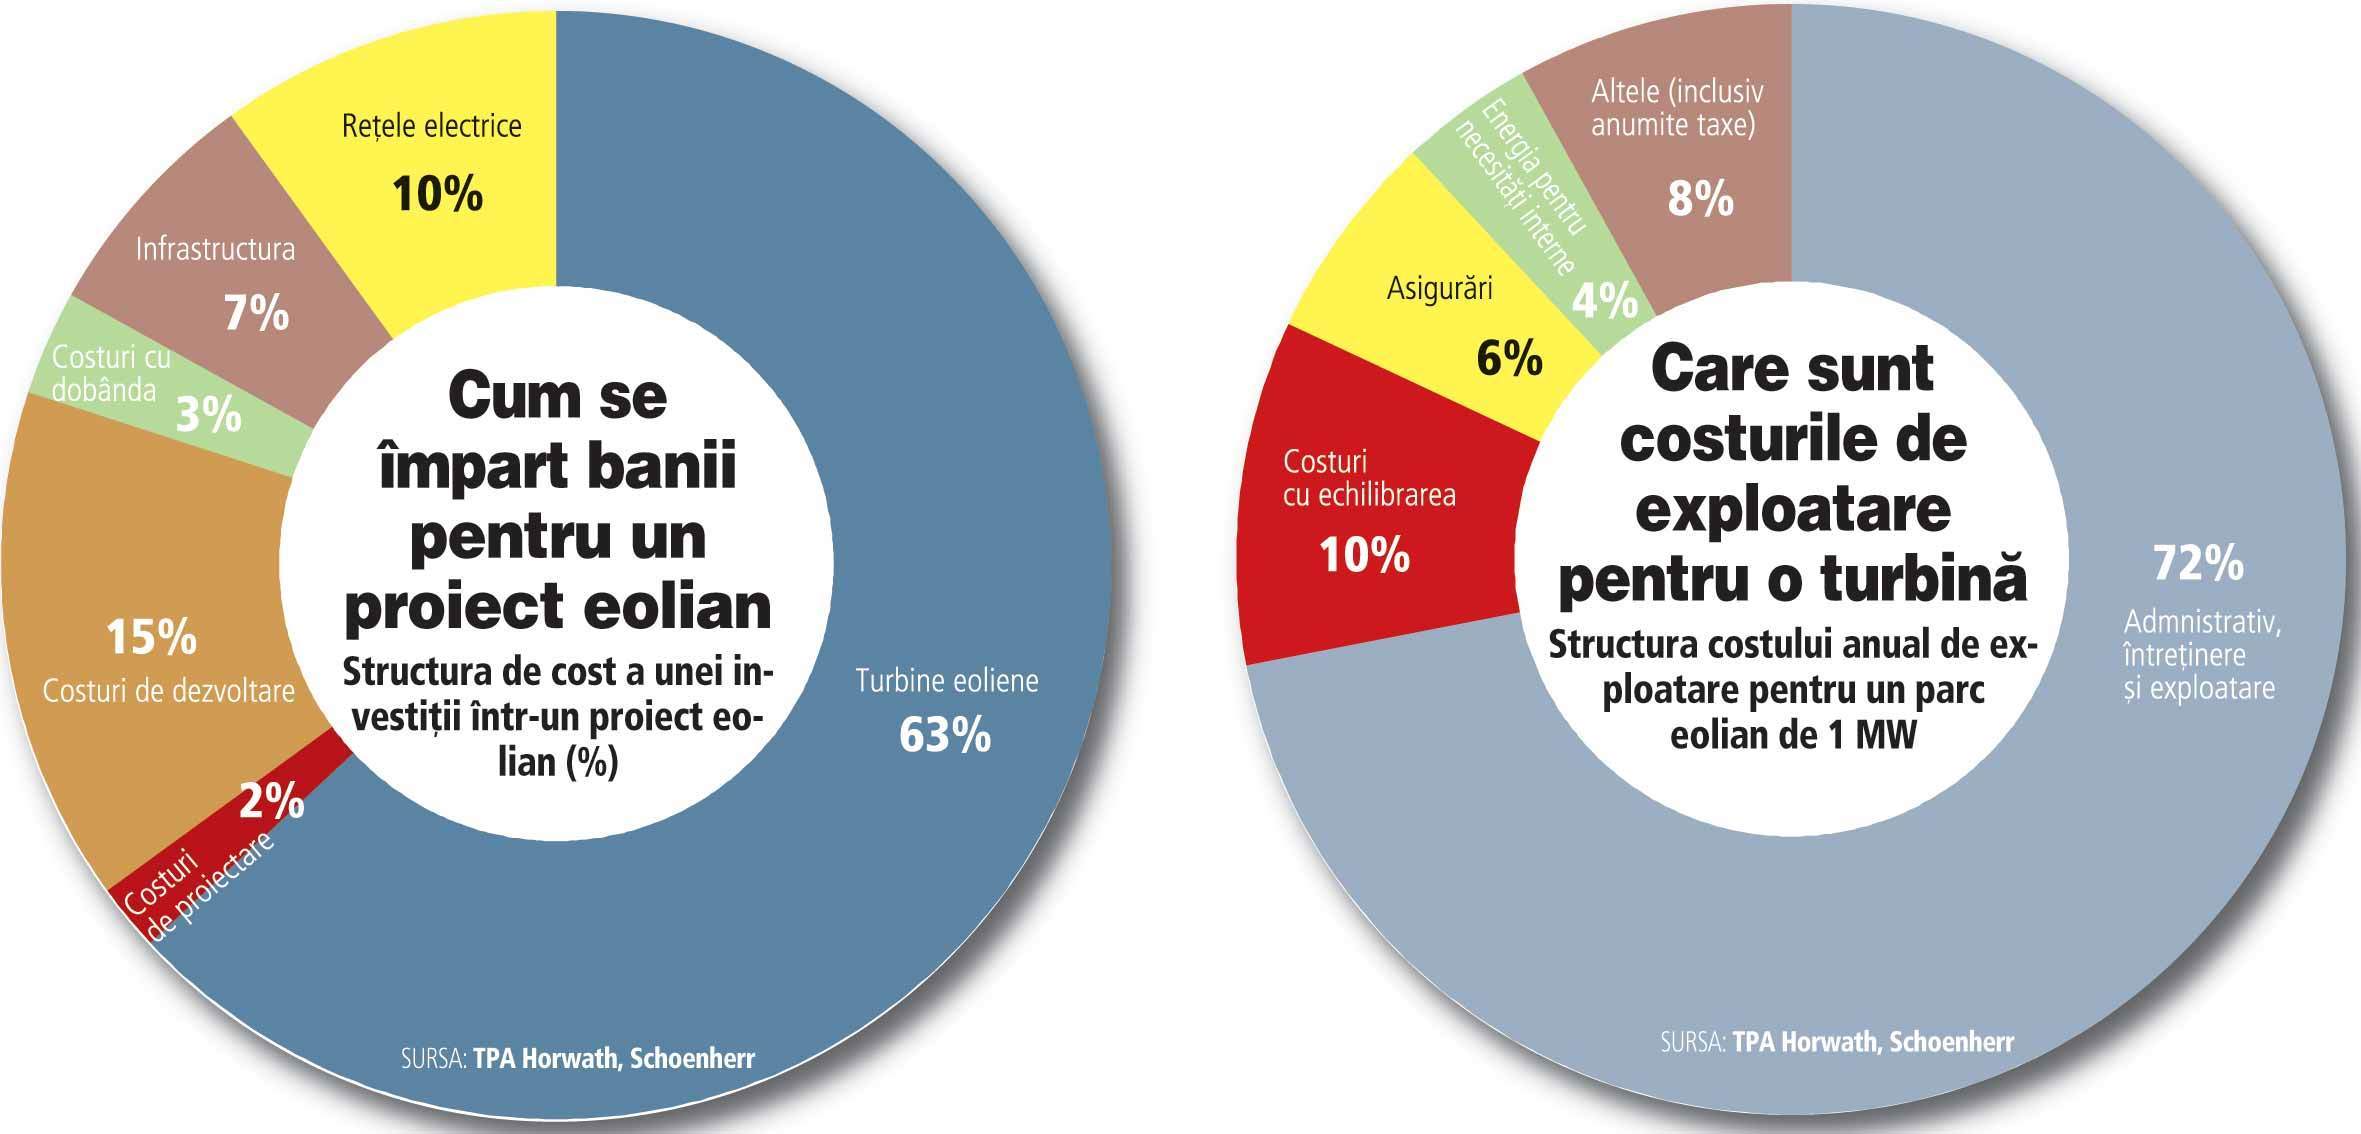 Infografic: tot ce trebuie să ştiţi despre costurile unui parc eolian